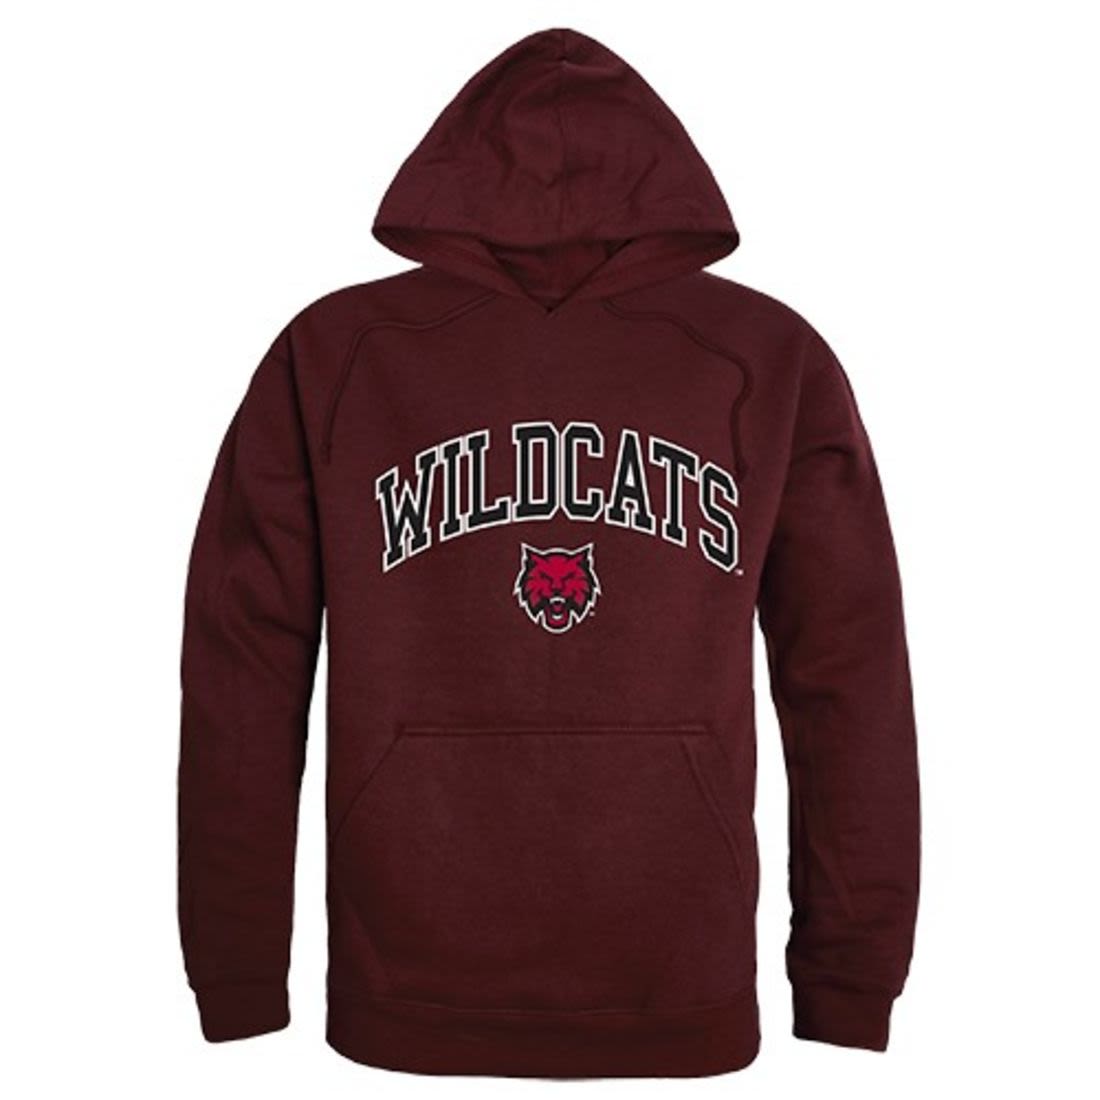 Central Washington University Wildcats Campus Hoodie Sweatshirt Maroon-Campus-Wardrobe